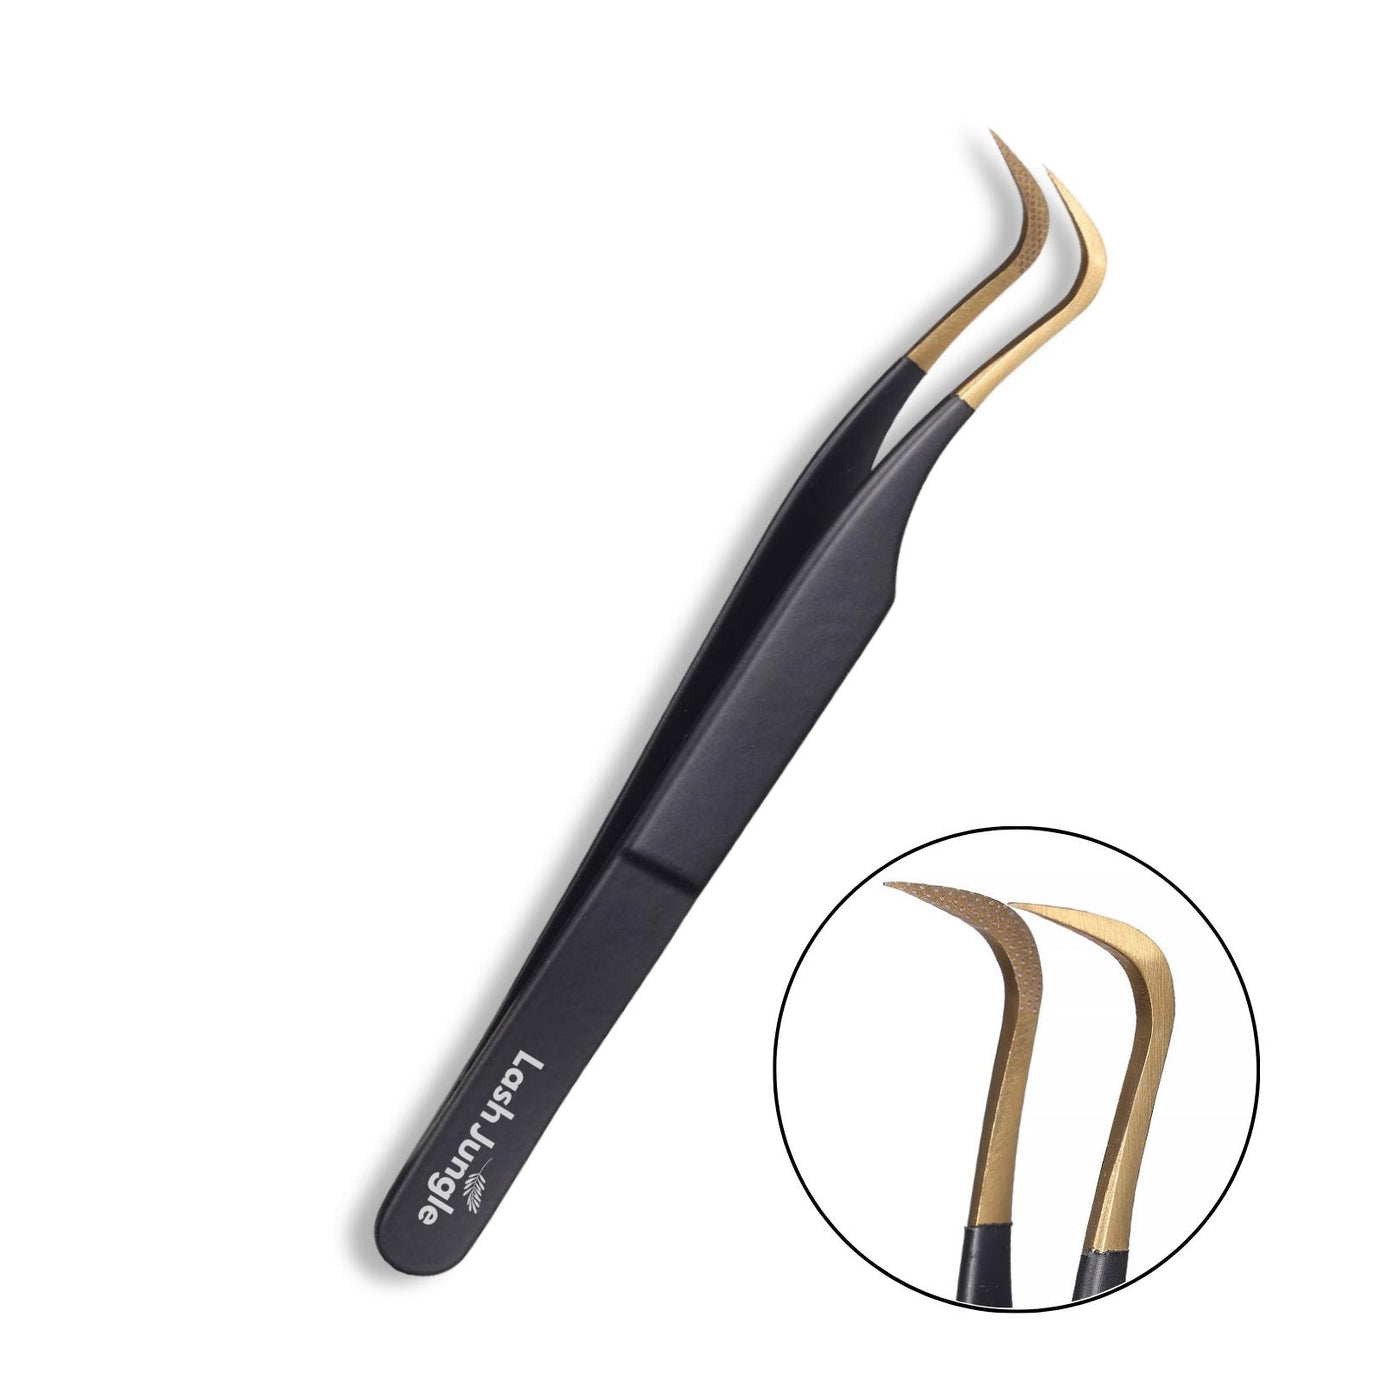 M curve fibre tip lash tweezers - black for eyelash extensions